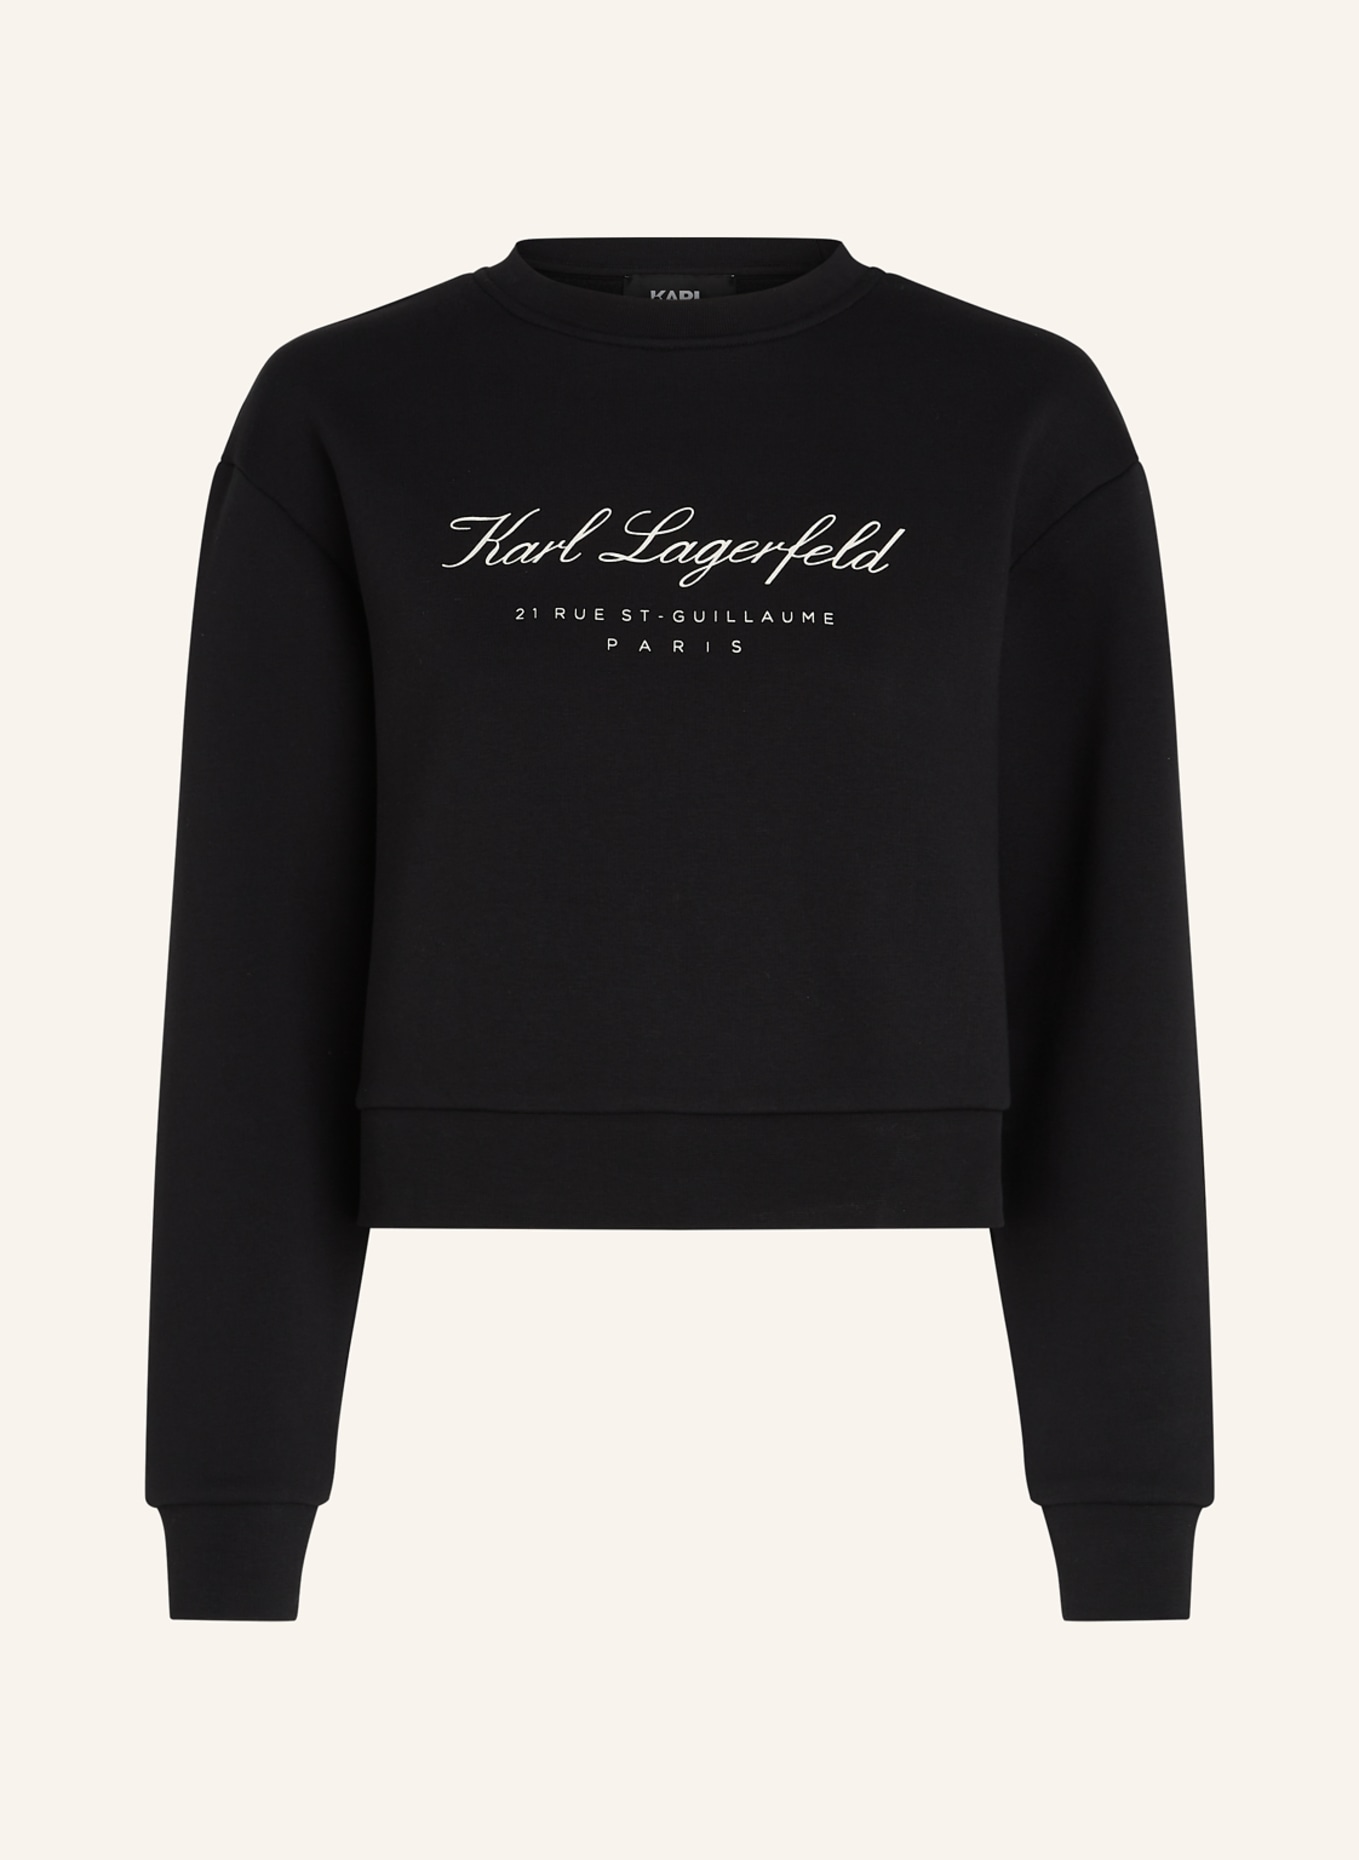 KARL LAGERFELD Sweatshirt, Farbe: SCHWARZ (Bild 1)